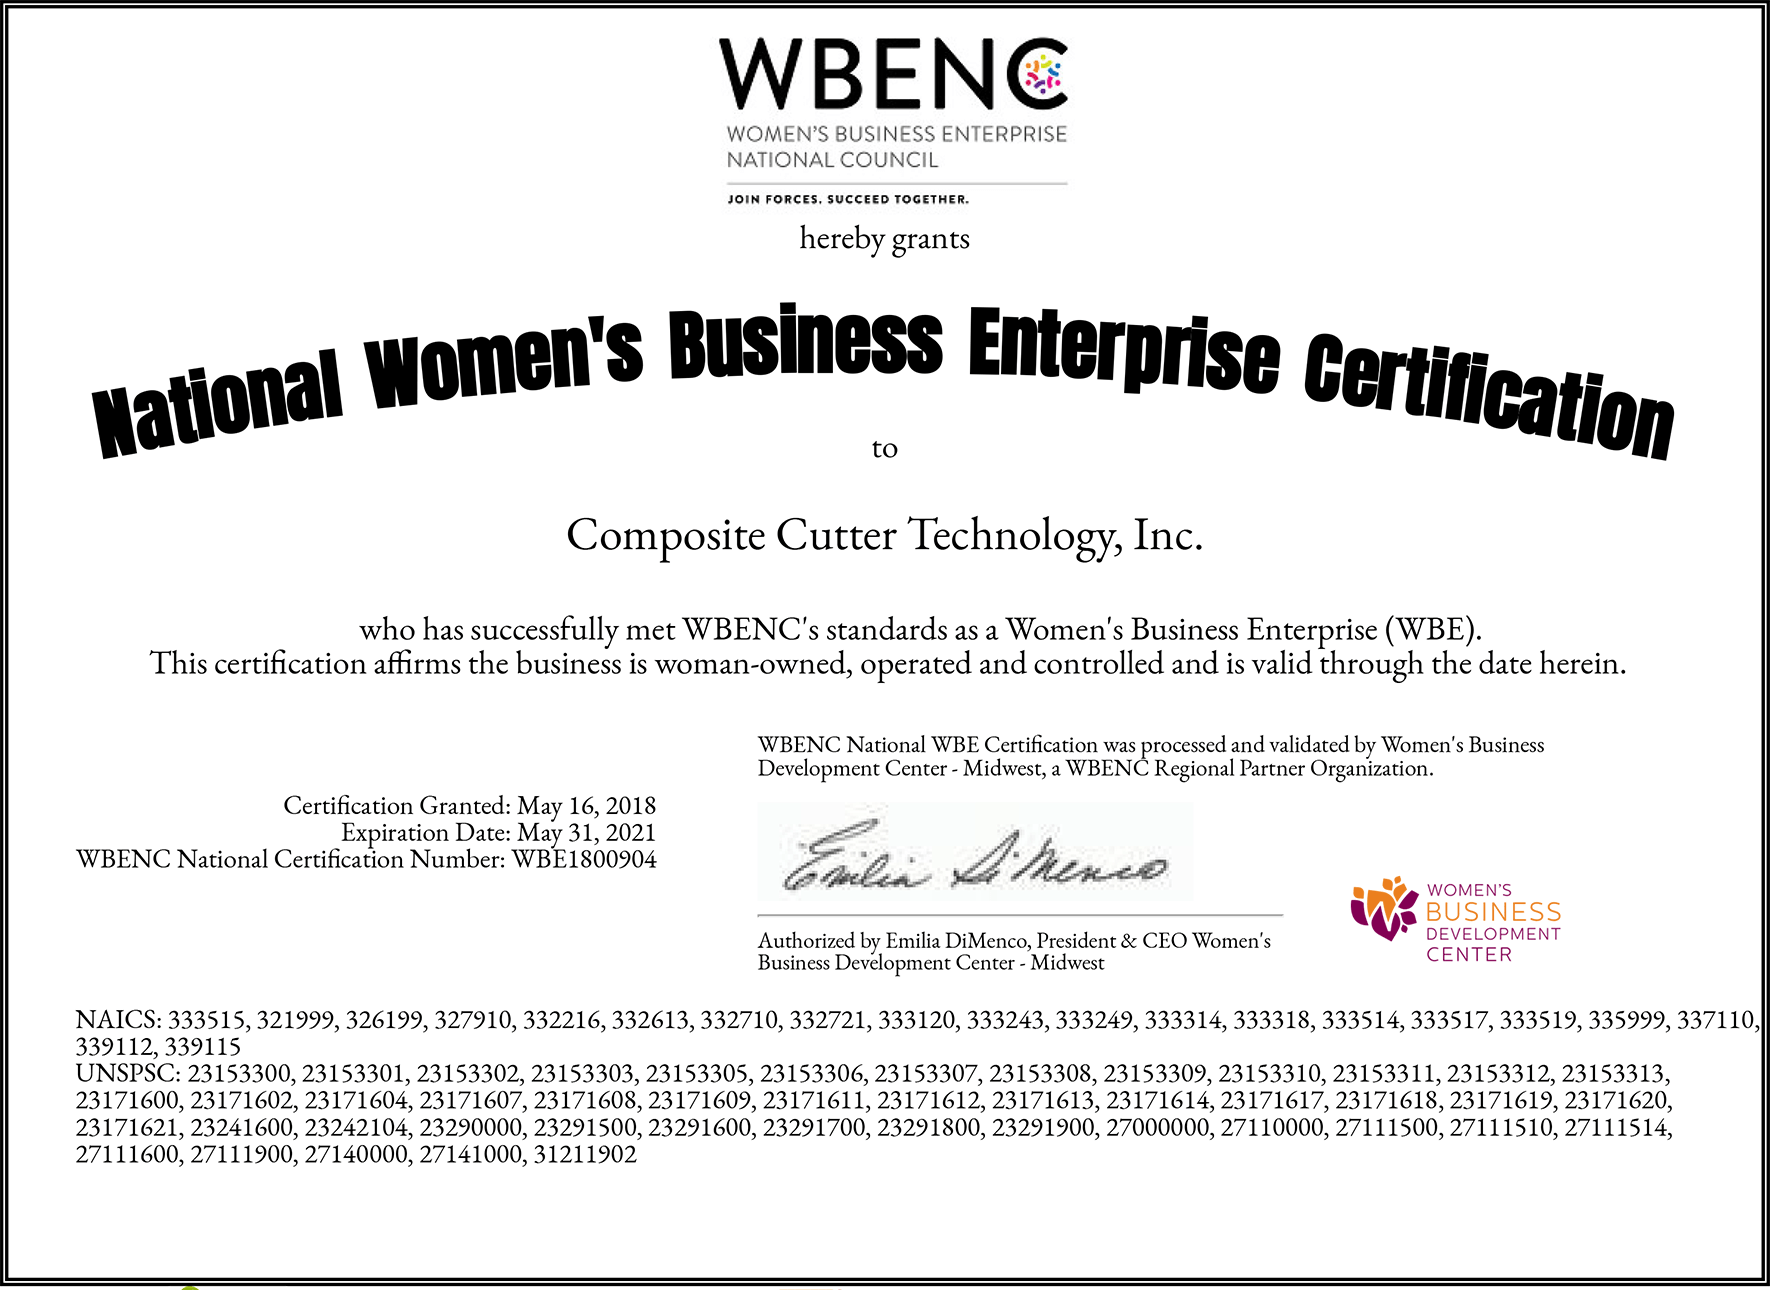 Women’s Business Enterprise National Council (WBENC) certification